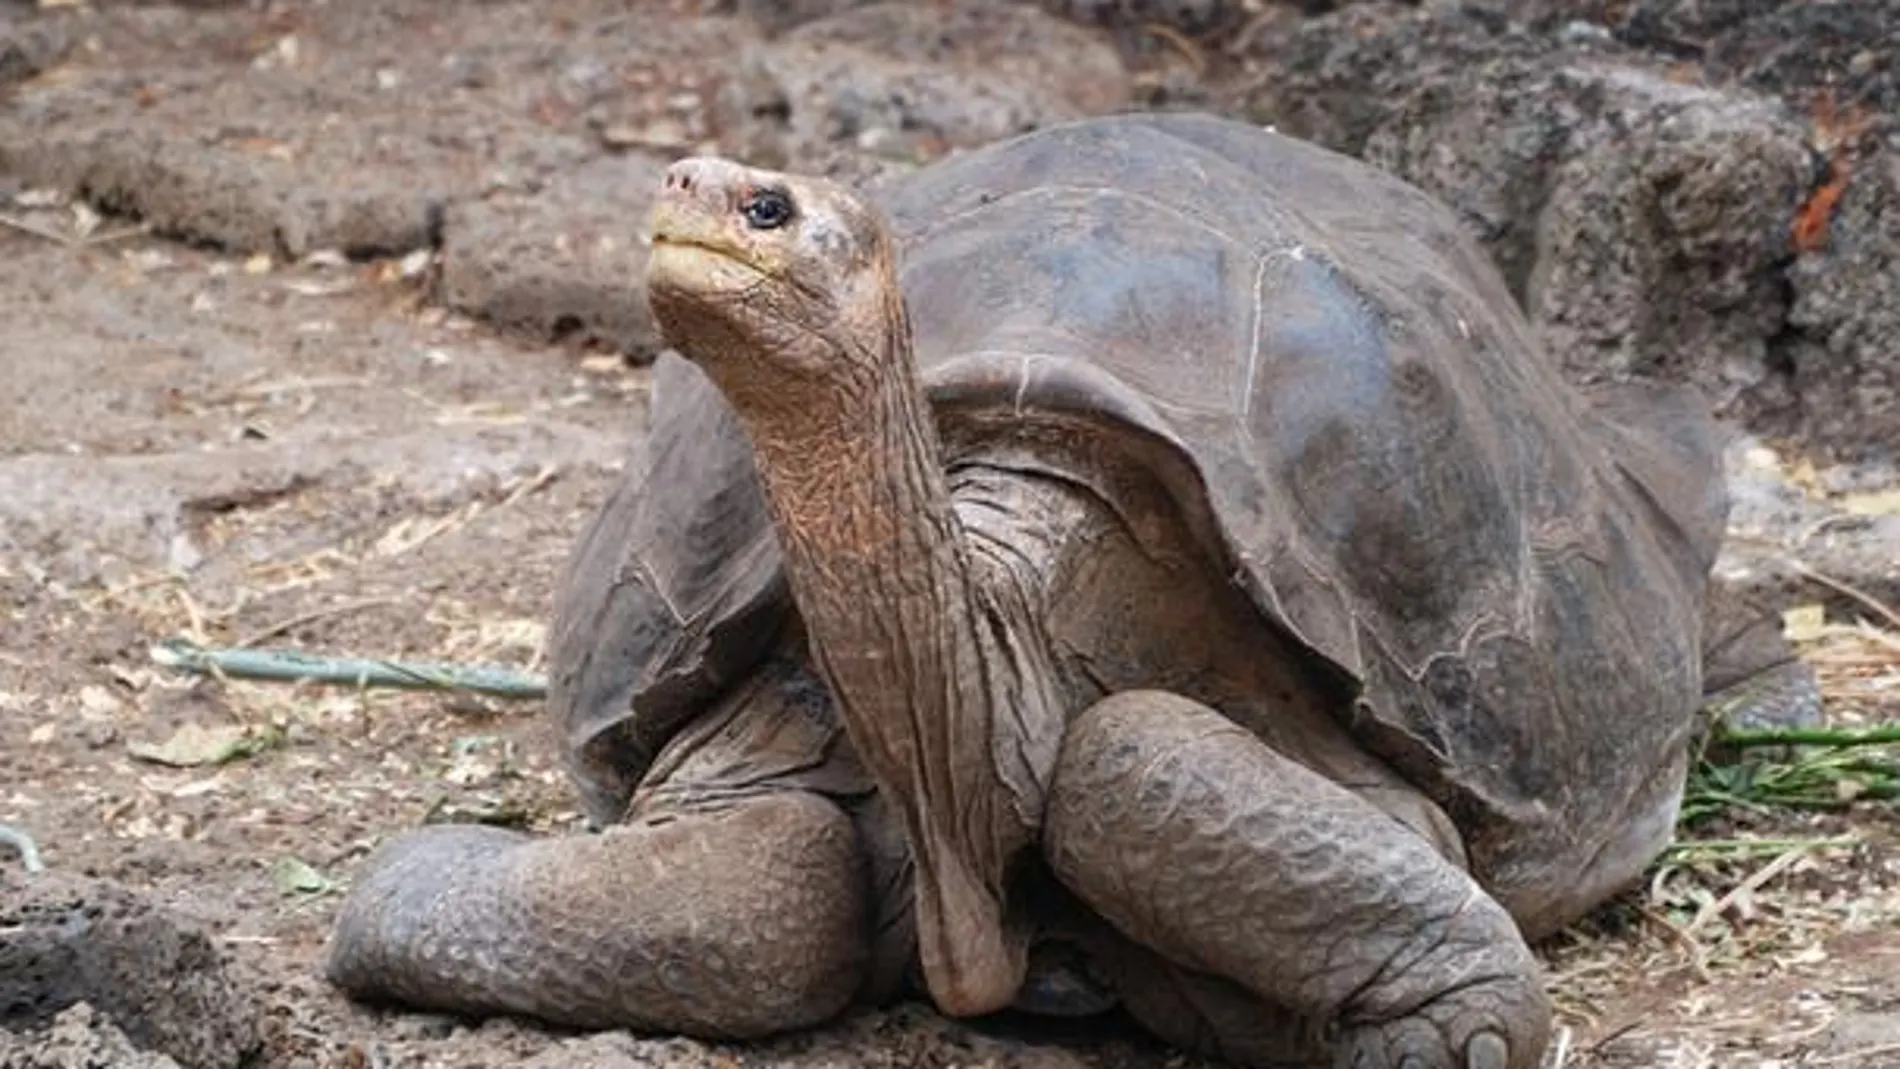 El solitario George, el único ejemplar de la tortuga gigante de Pinta (Chelonoidis abingdonii) que quedaba en el mundo, falleció en 2012. El trabajo que ha llevado a cabo ahora un equipo de científicos en las islas Galápagos podría recuperar su especie dentro de unos años